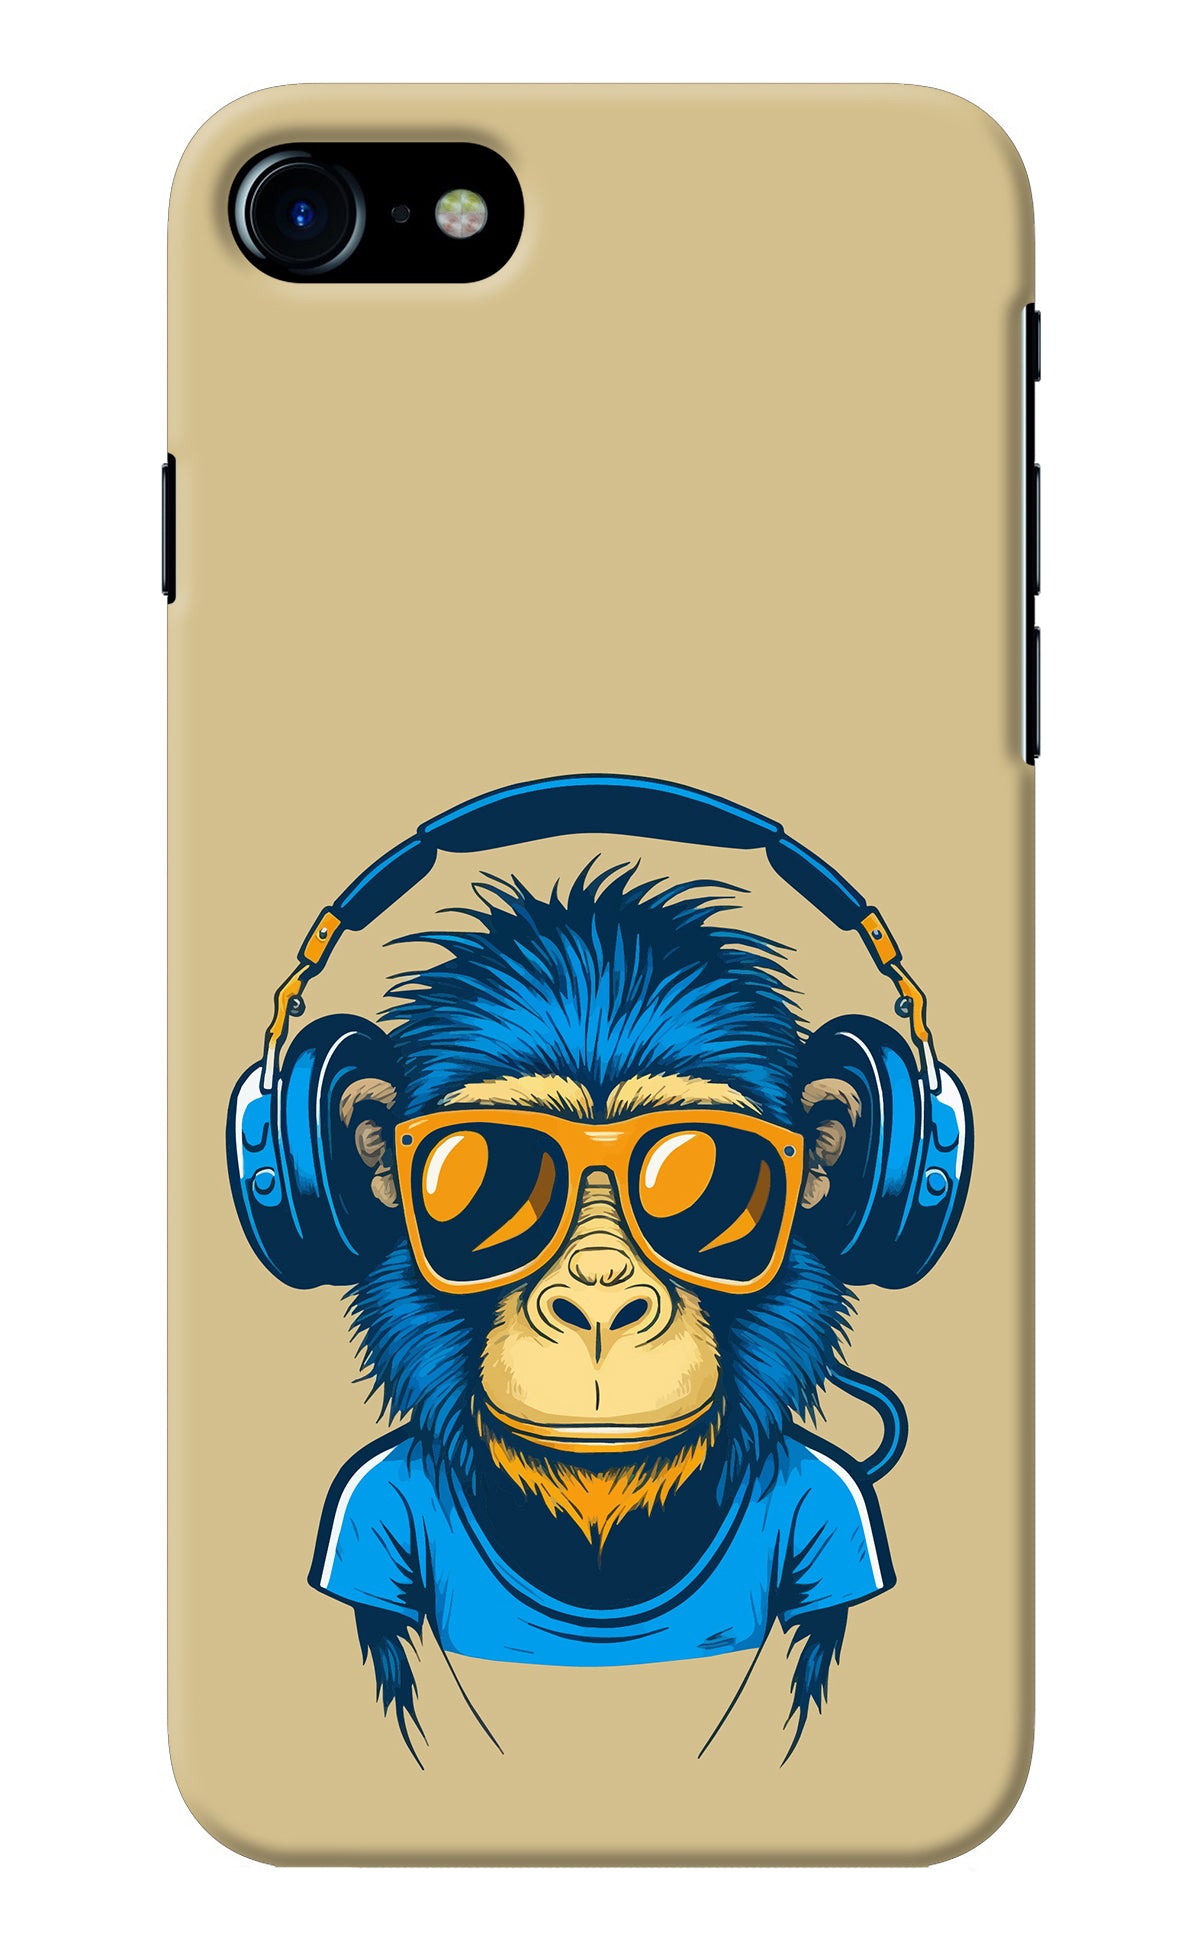 Monkey Headphone iPhone 7/7s Back Cover